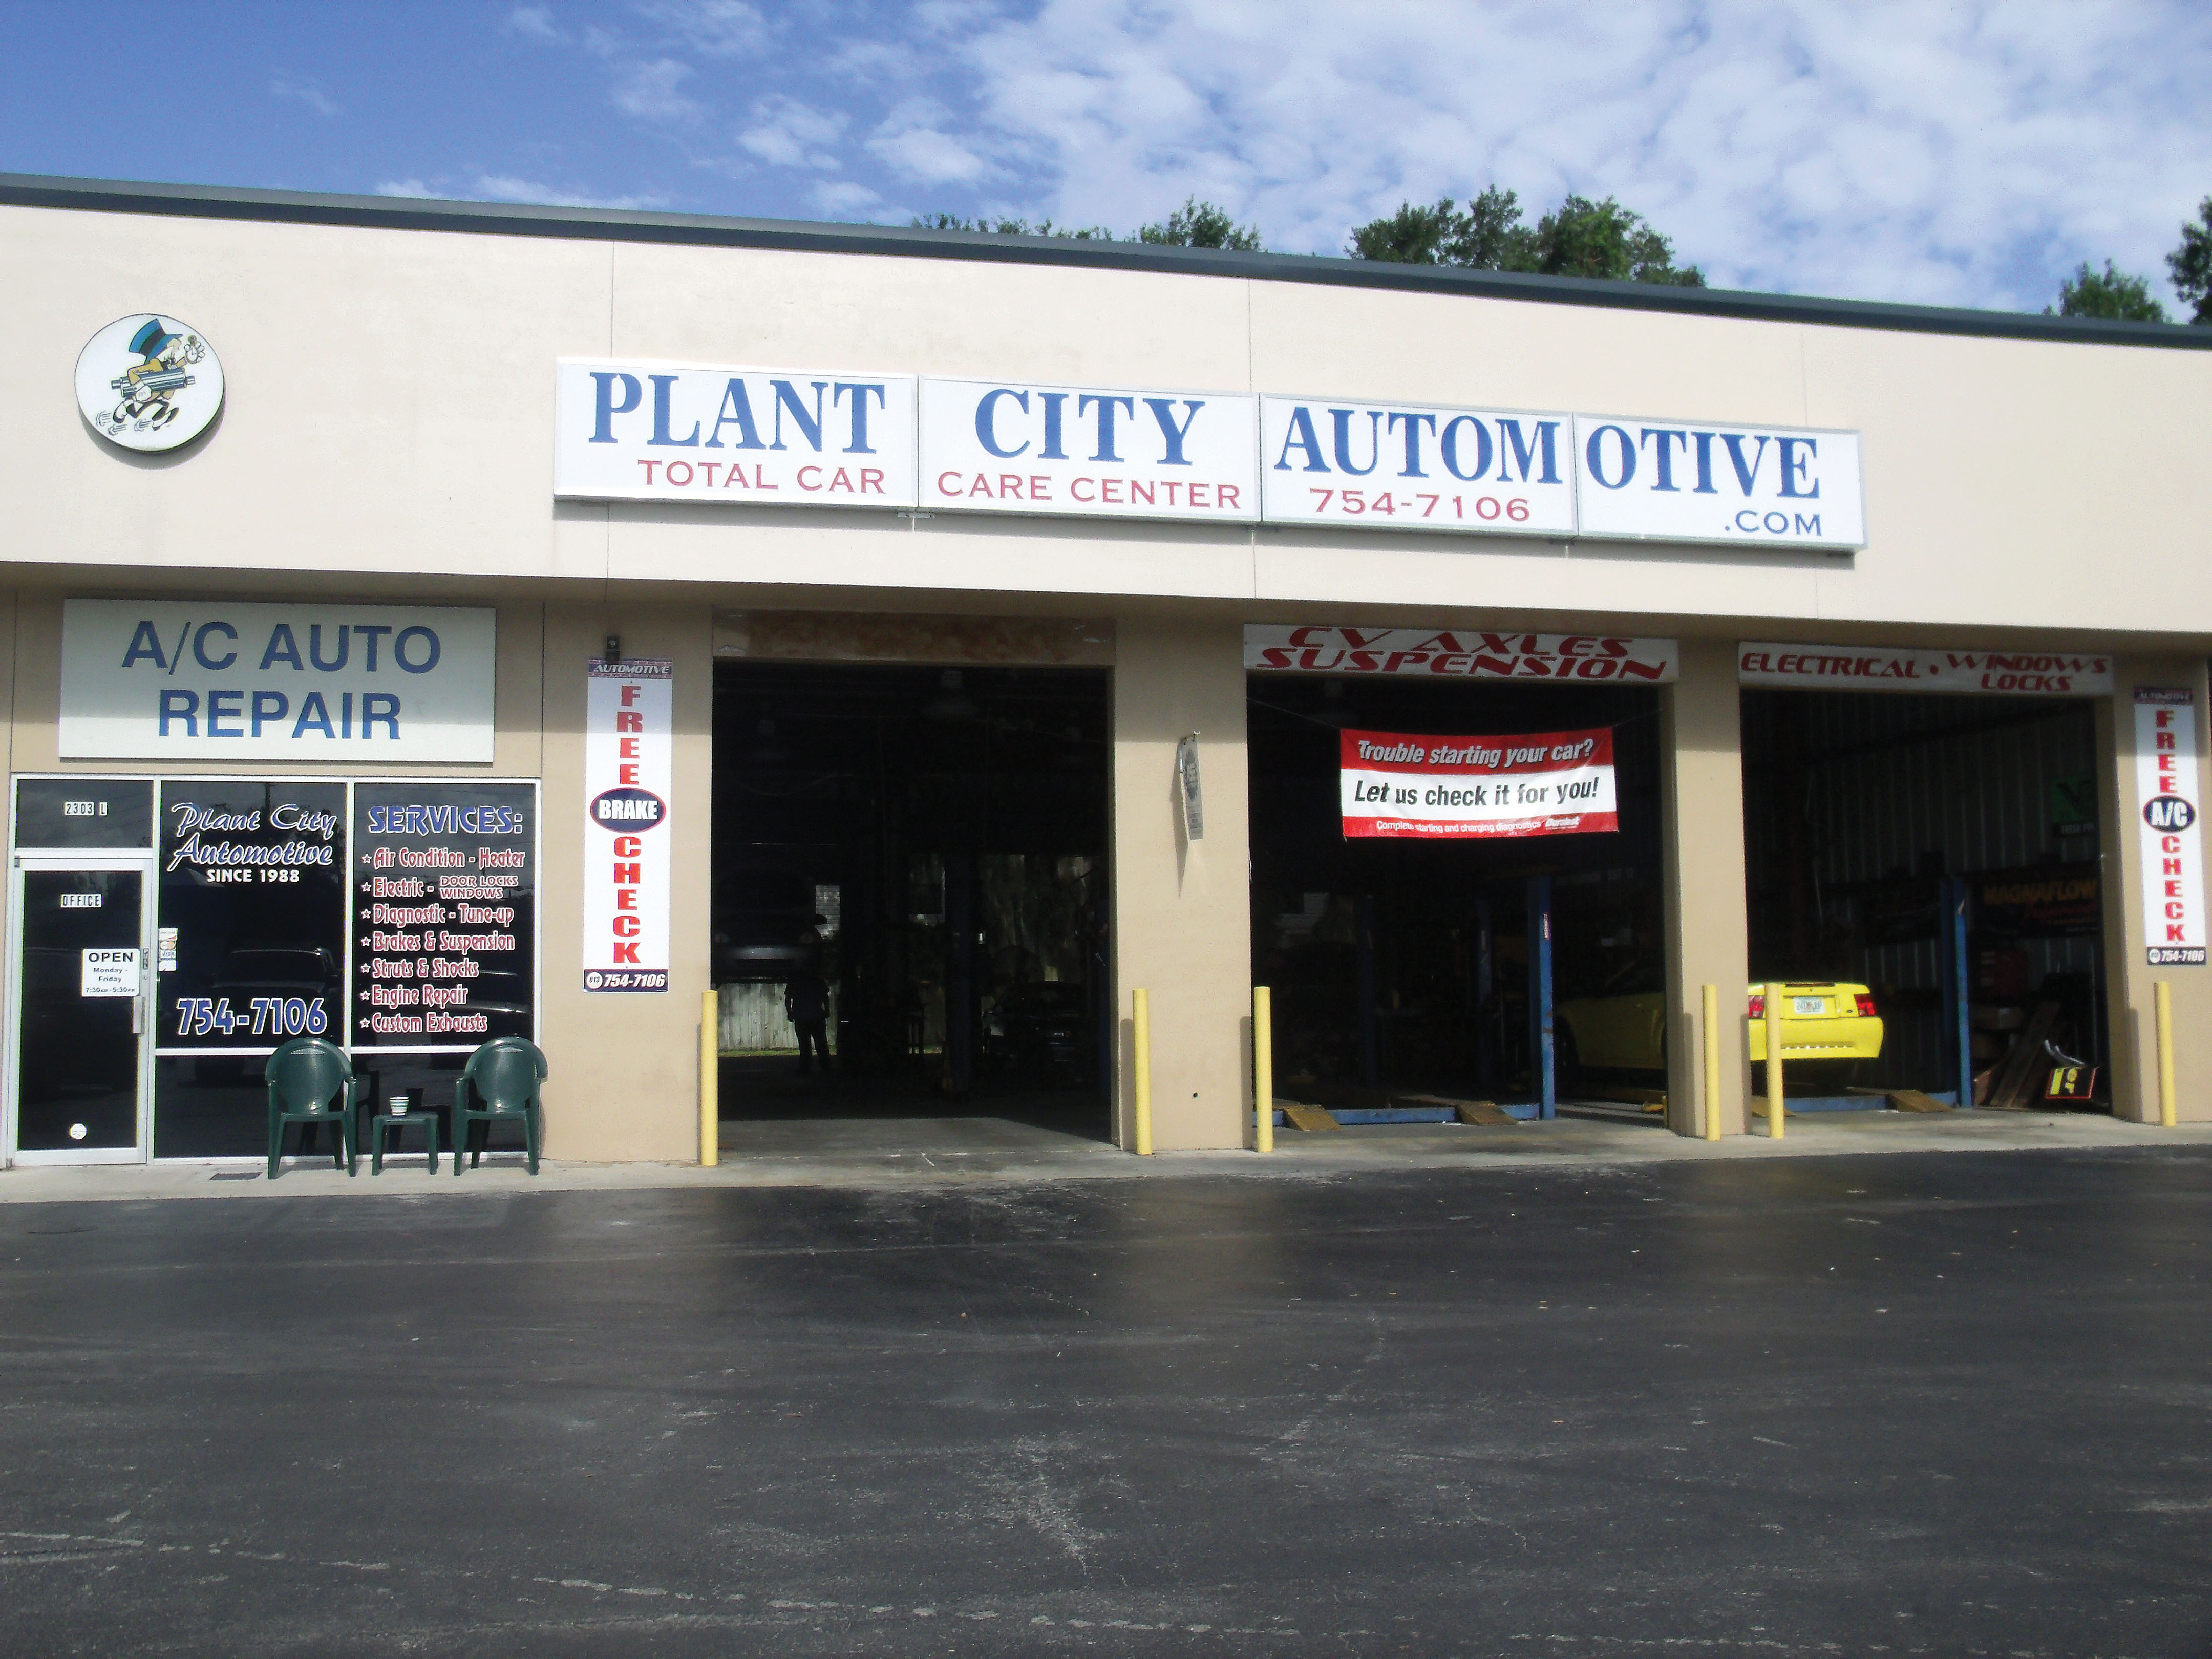 Plant City Automotive